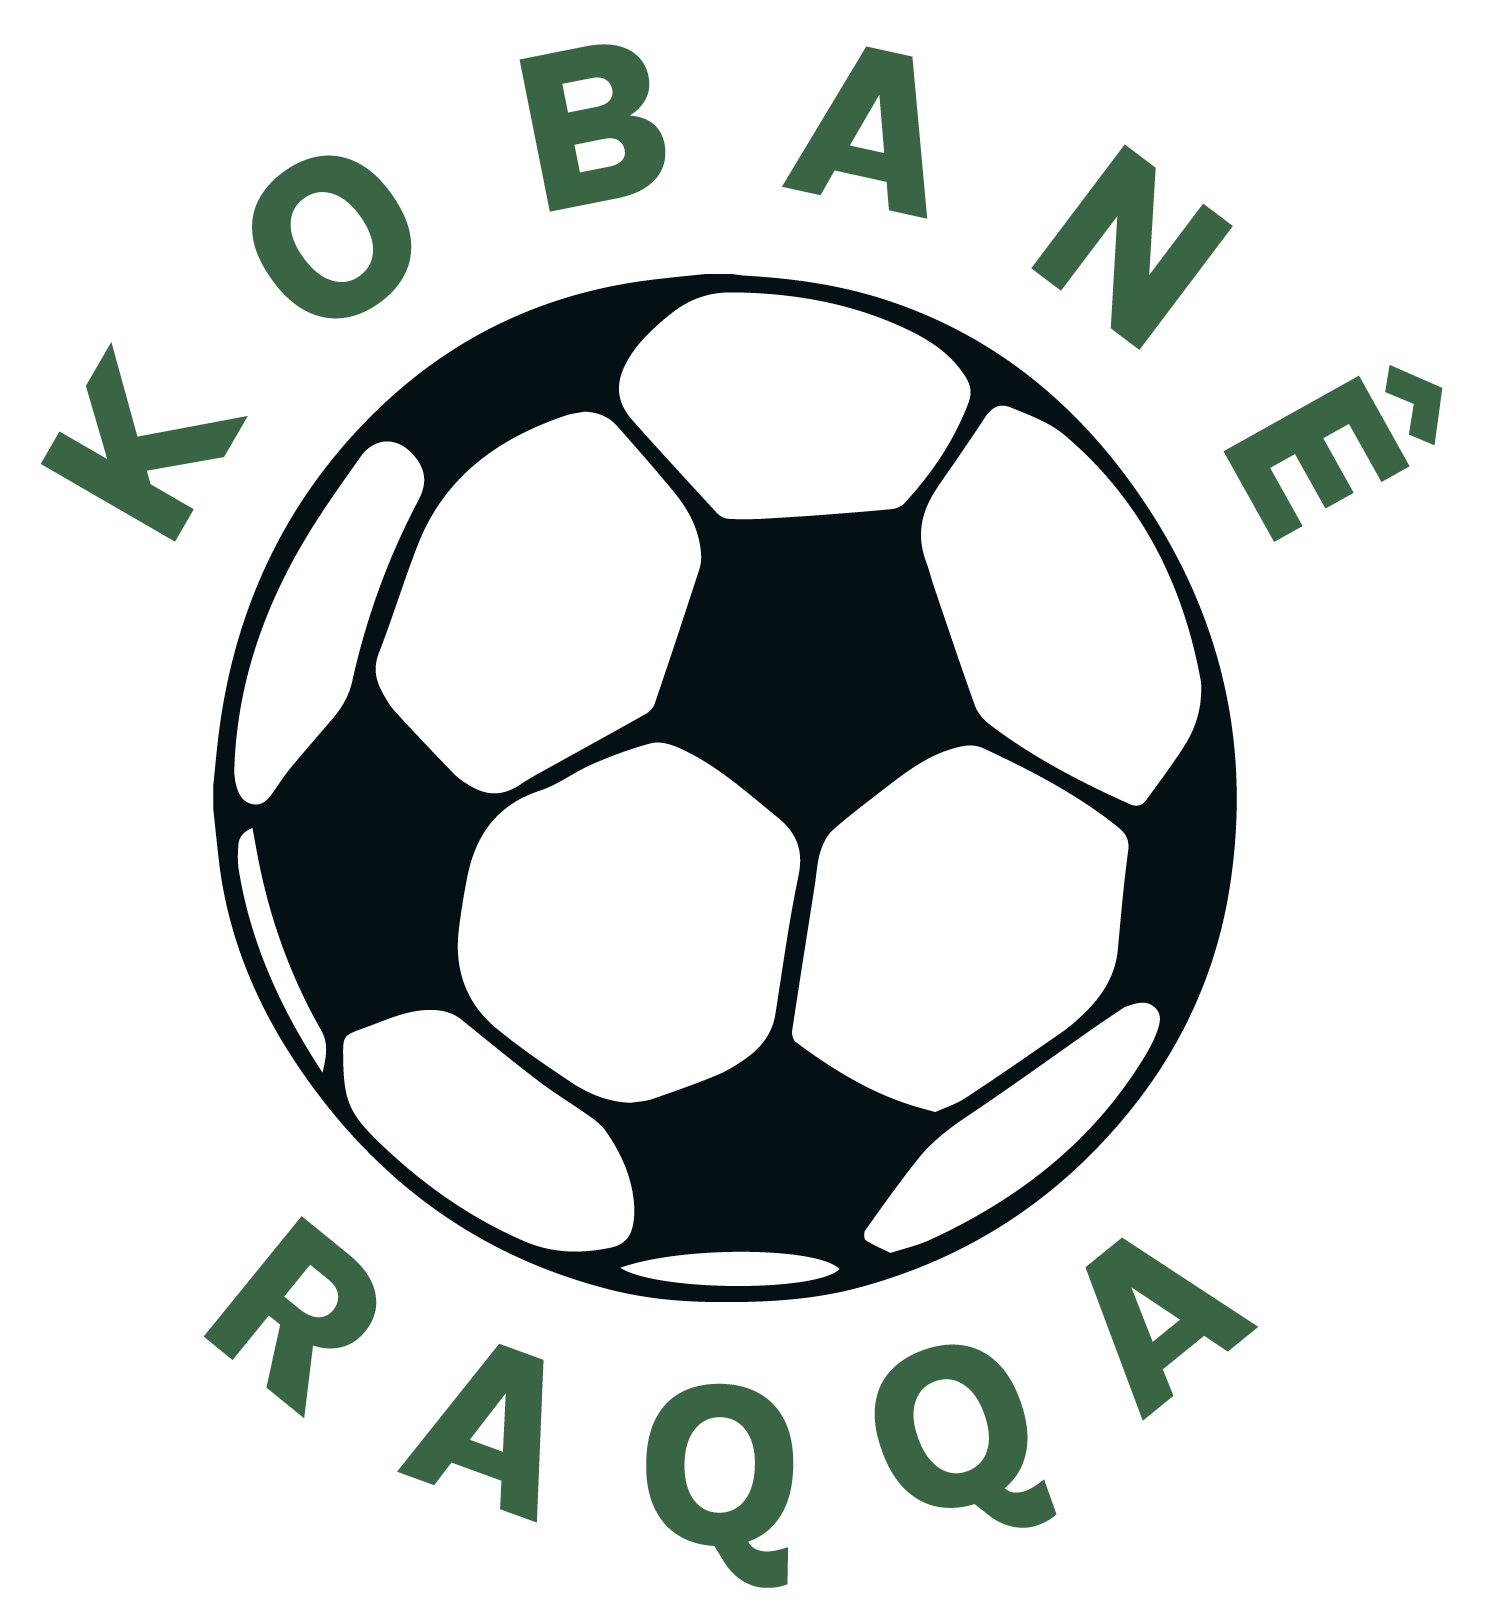 Fotballbane.org